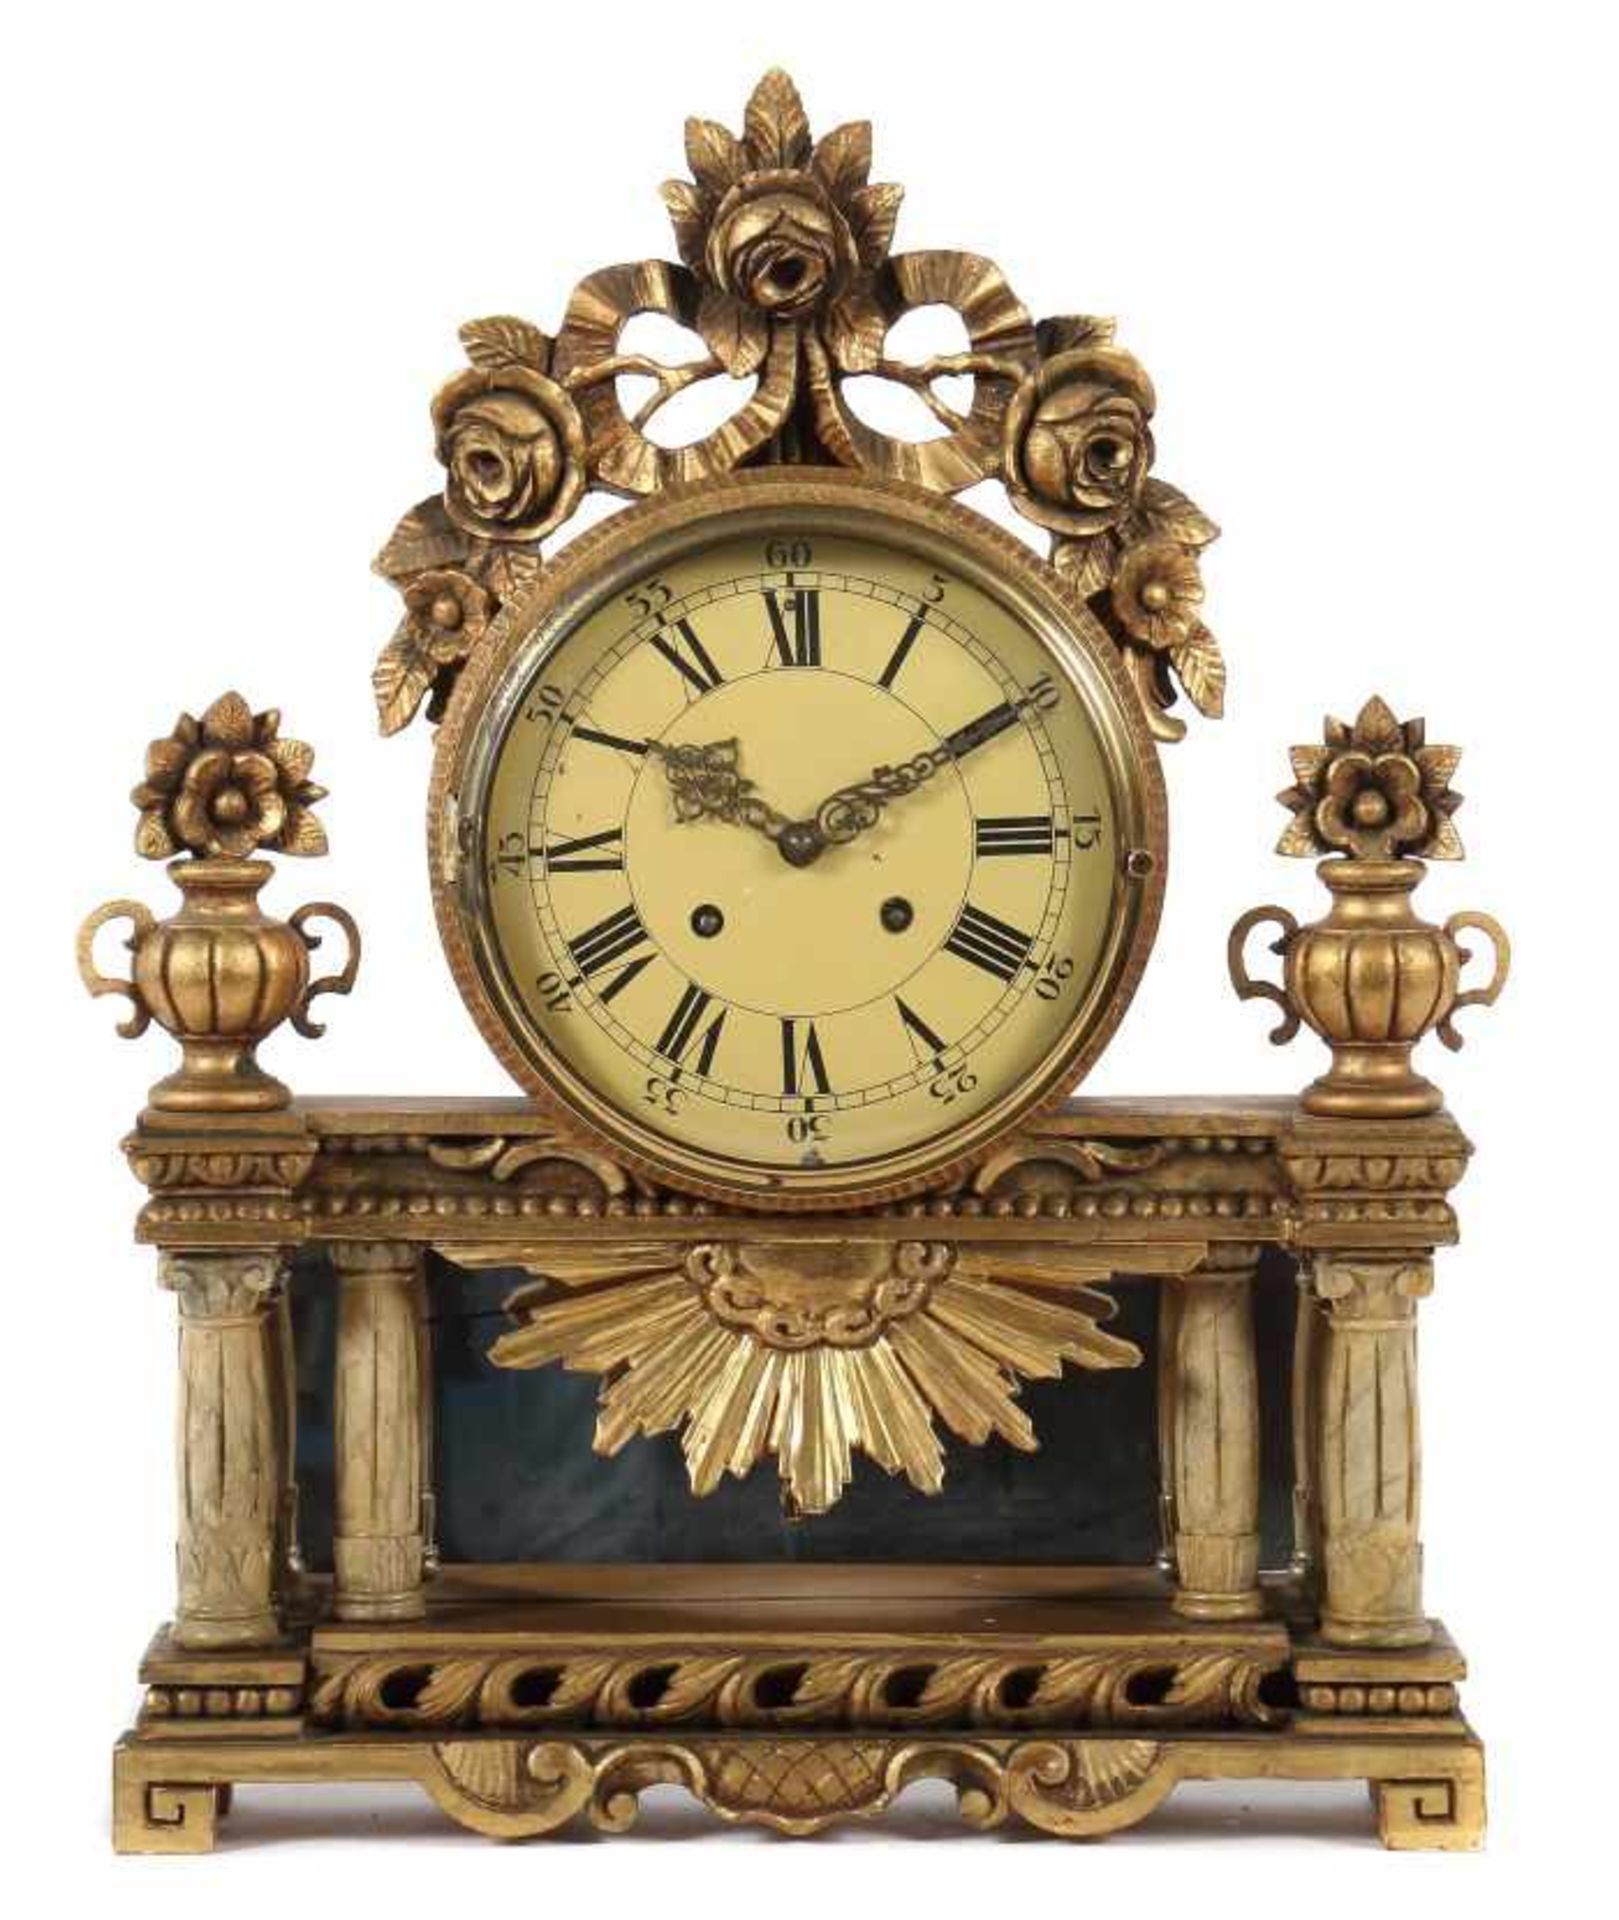 Kaminuhr wohl Schweden, 19. Jh., Holz/vergoldet, großes rundes Uhrengehäuse, von Balustrade